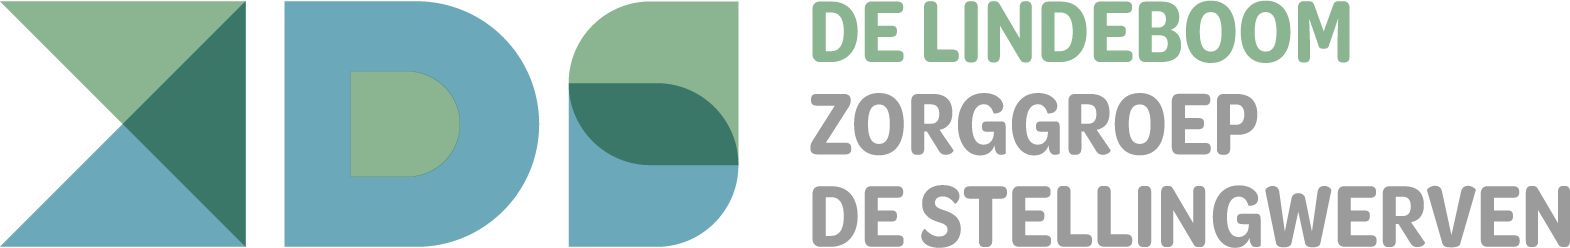 Logo De Lindeboom Zorggroep de Stellingwerven